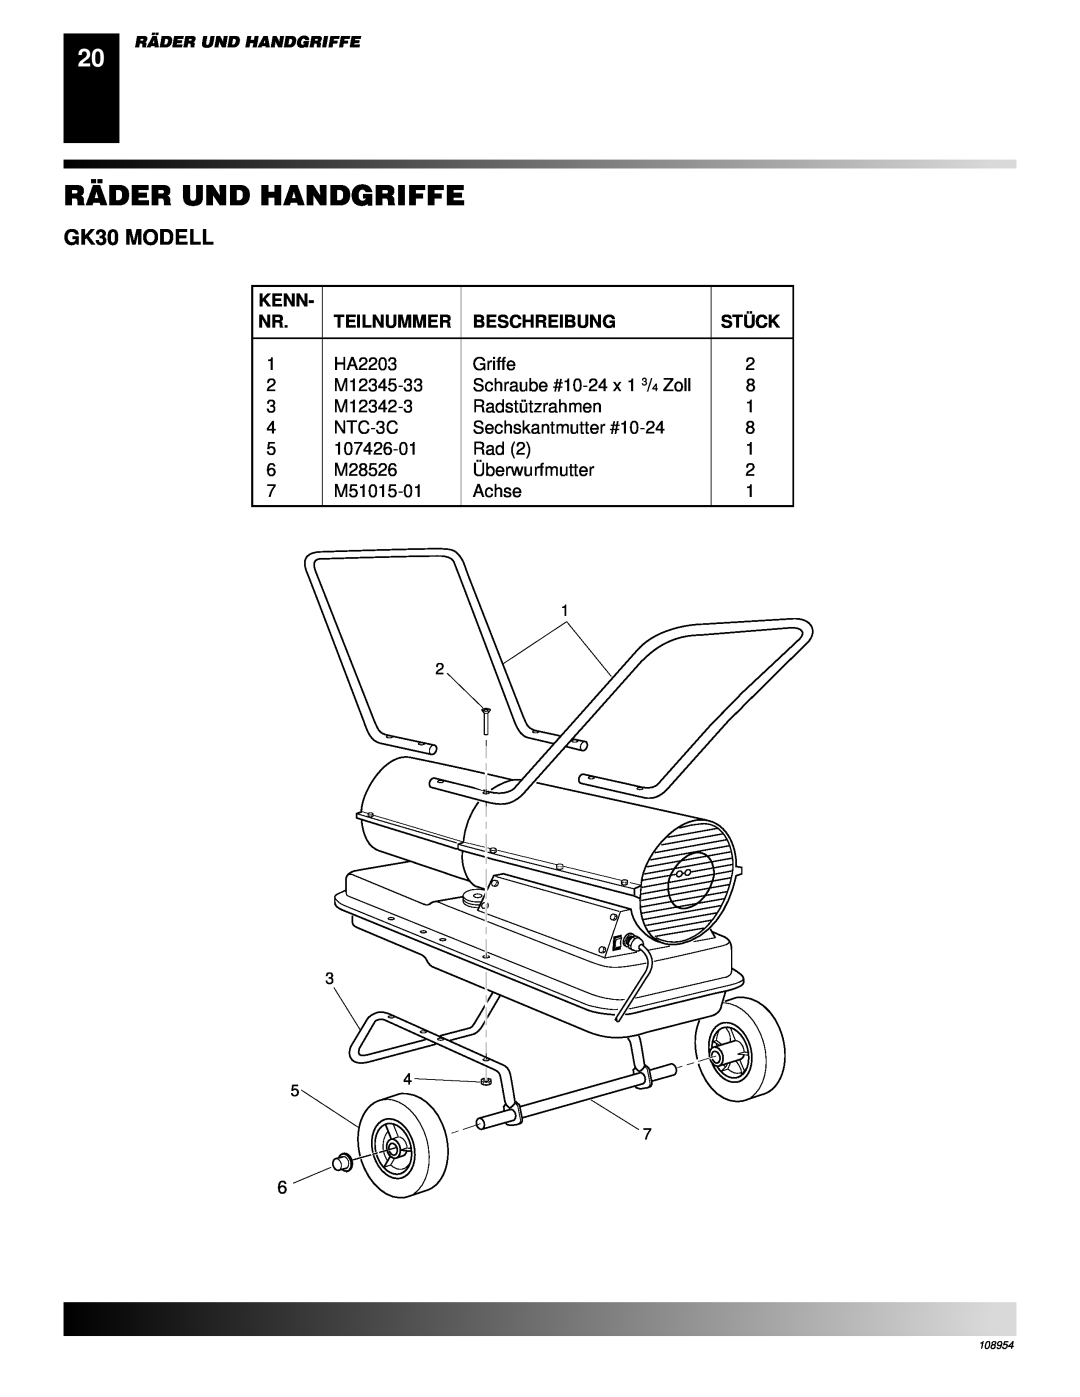 Desa GK20 owner manual Räder Und Handgriffe, GK30 MODELL 